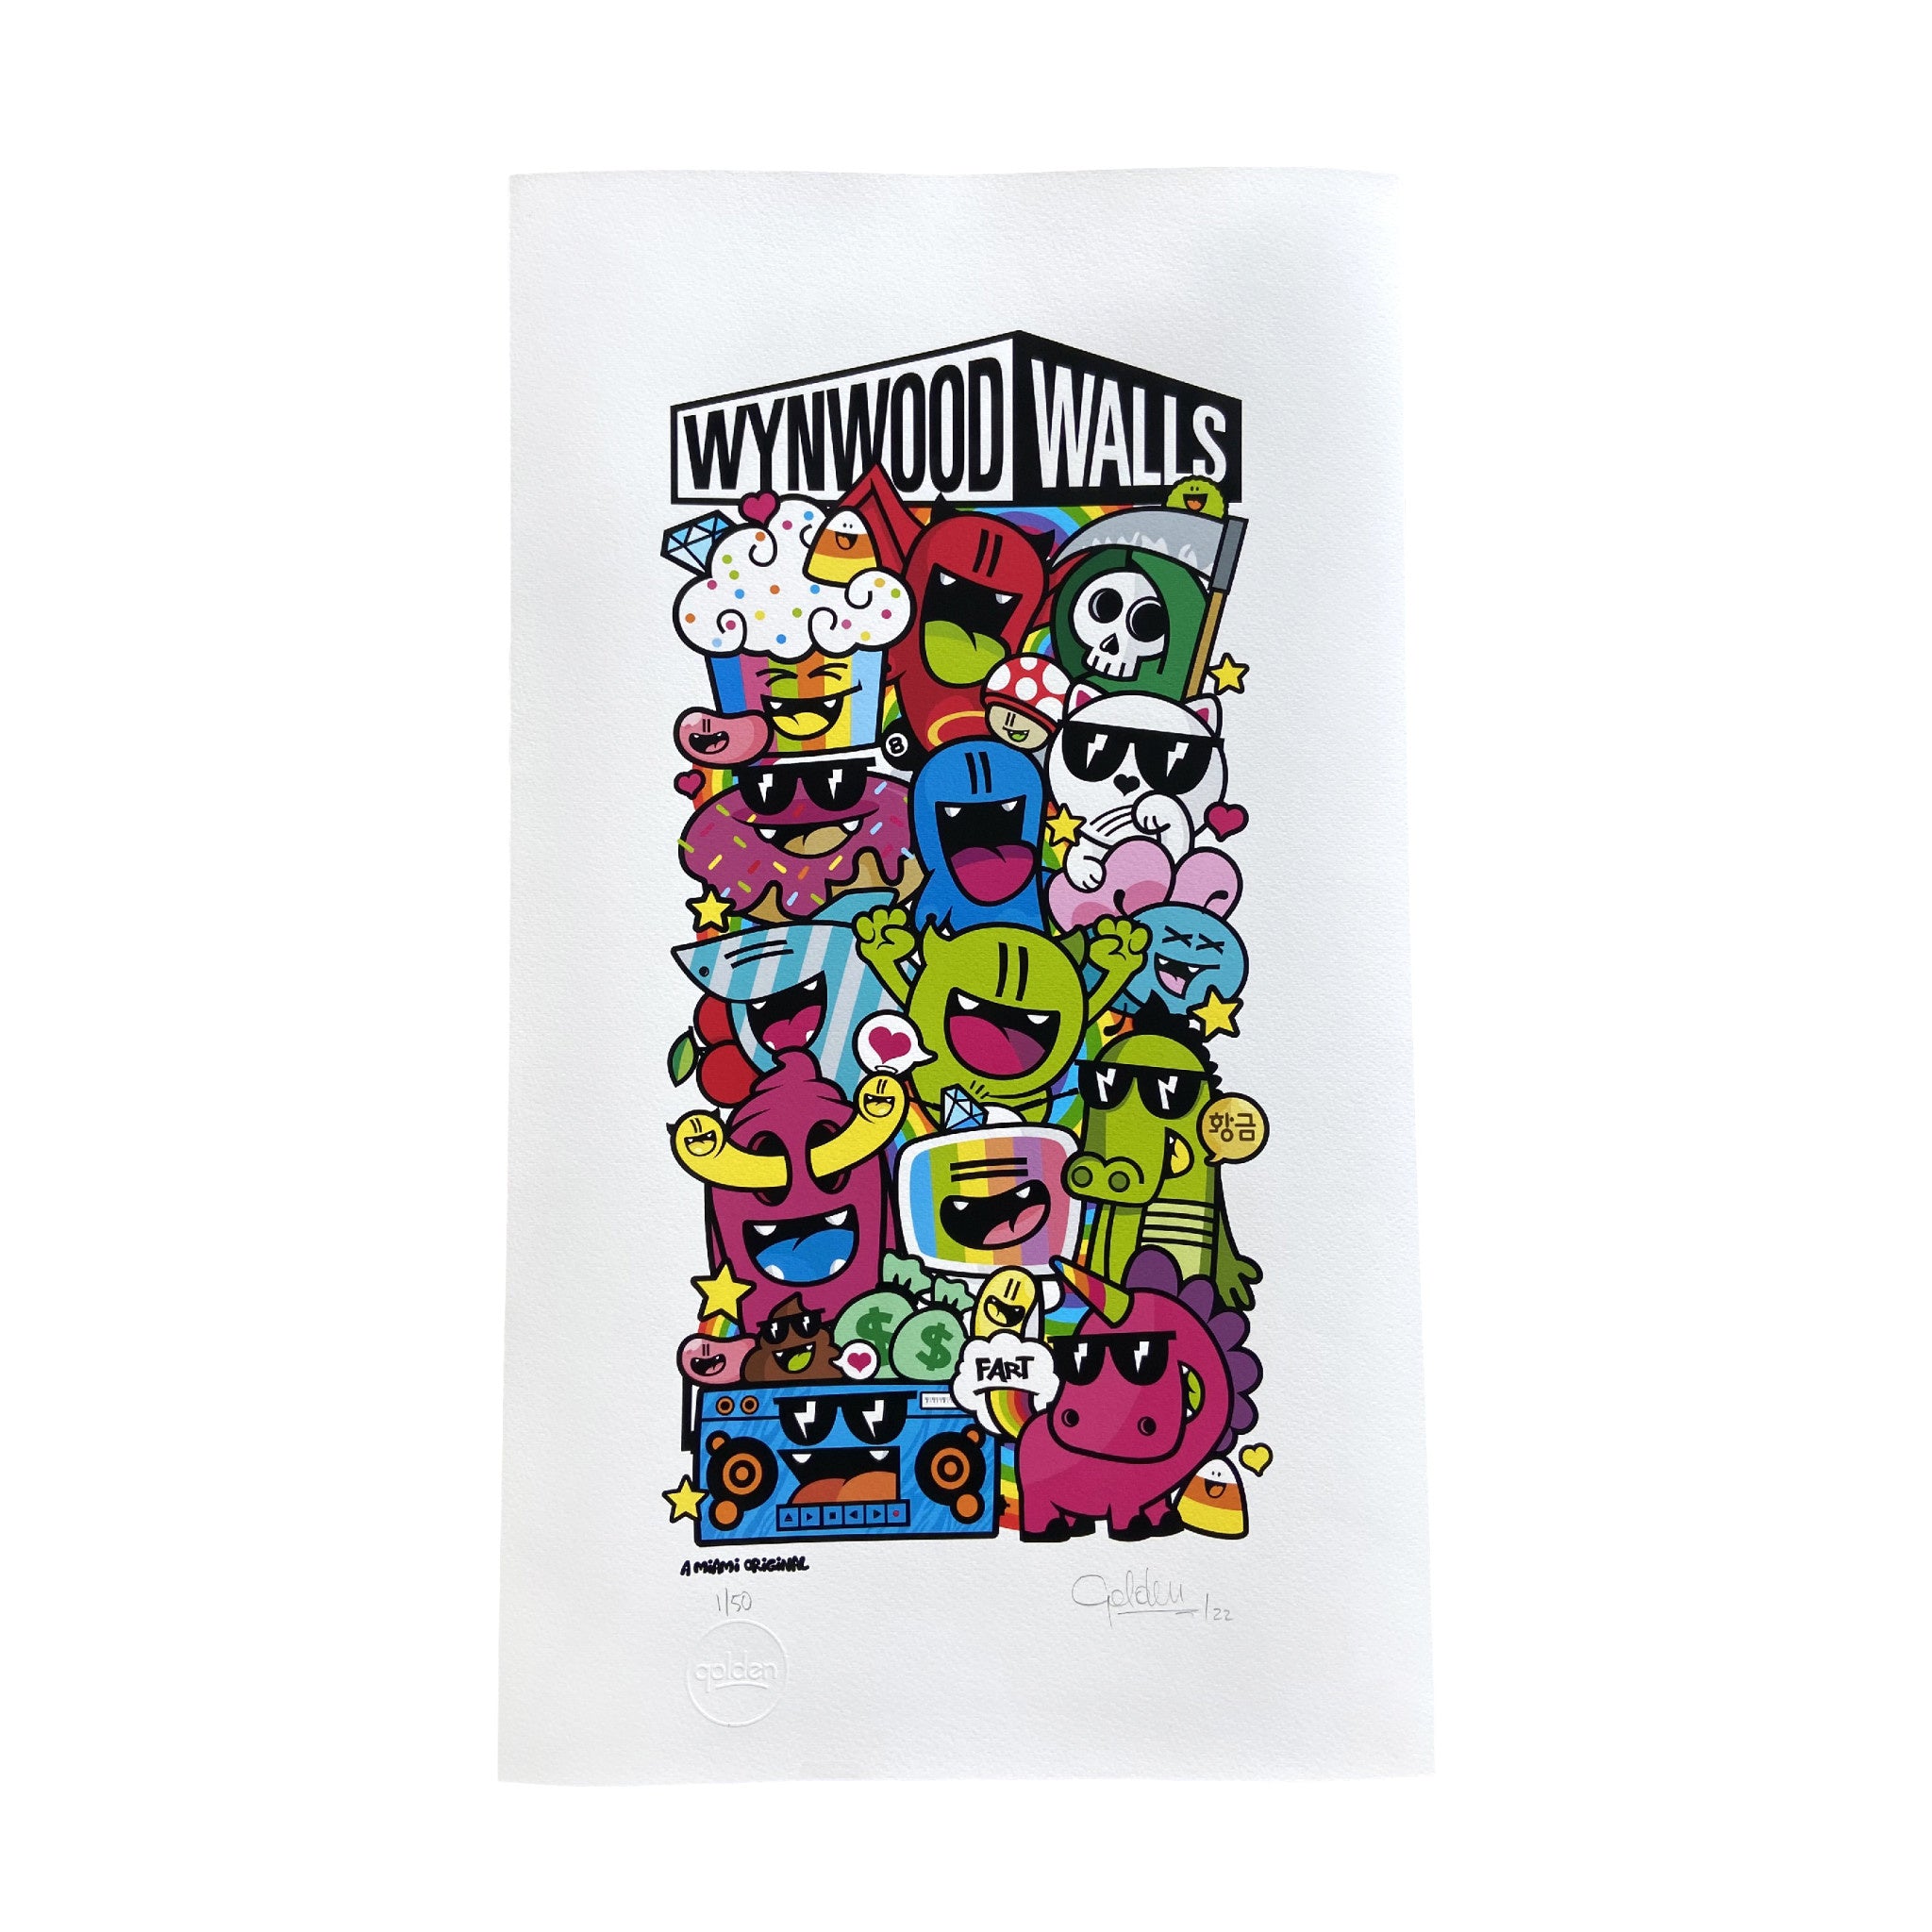 Golden305 x Wynwood Walls Print 2022 - Wynwood Walls Shop